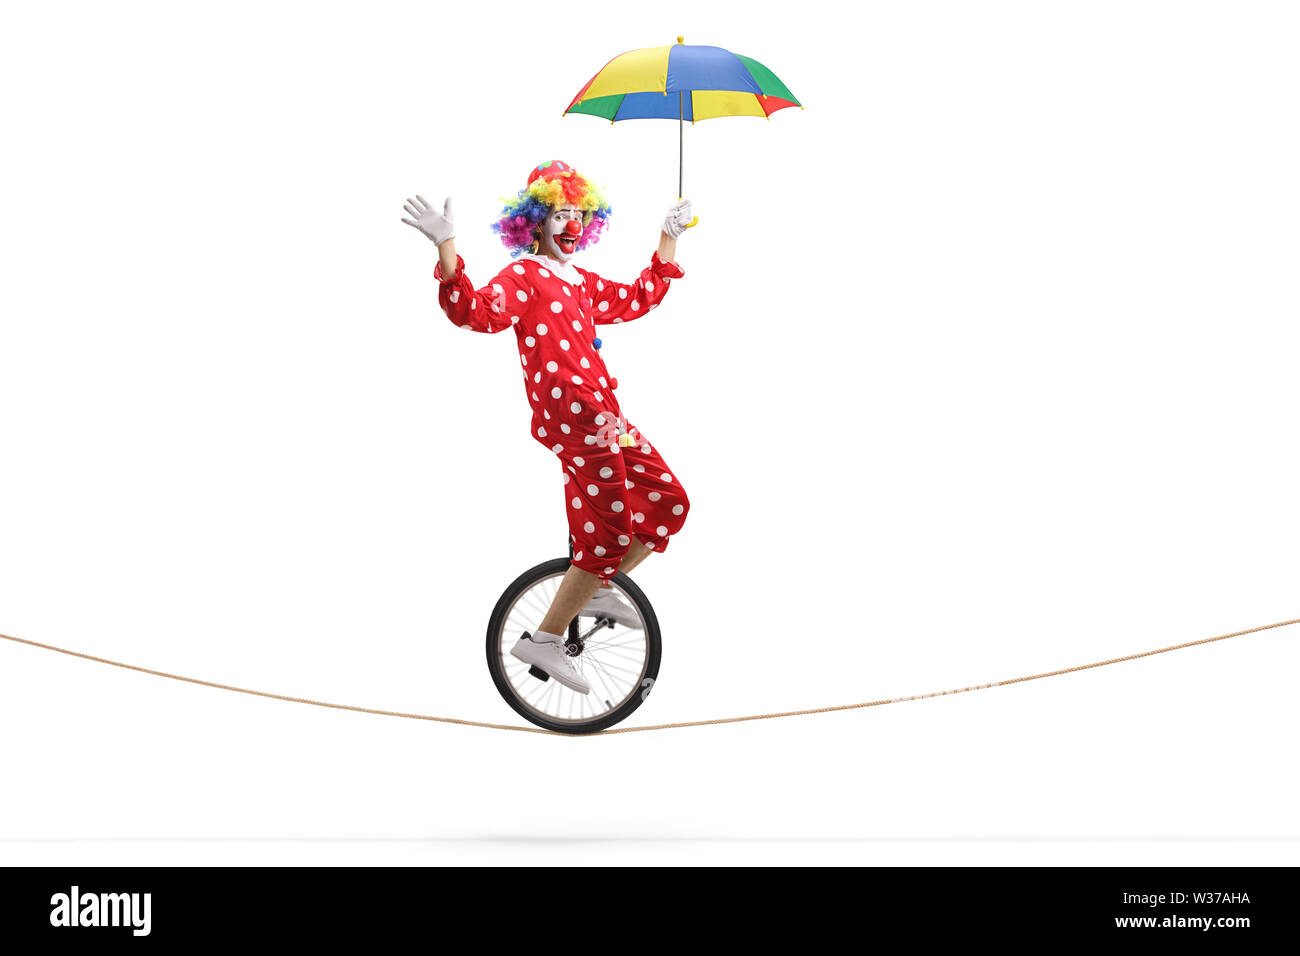 Volle Länge Profil geschossen von einem Clown Einrad fahren auf einem Seil und halten einen Regenschirm auf weißem Hintergrund Stockfoto